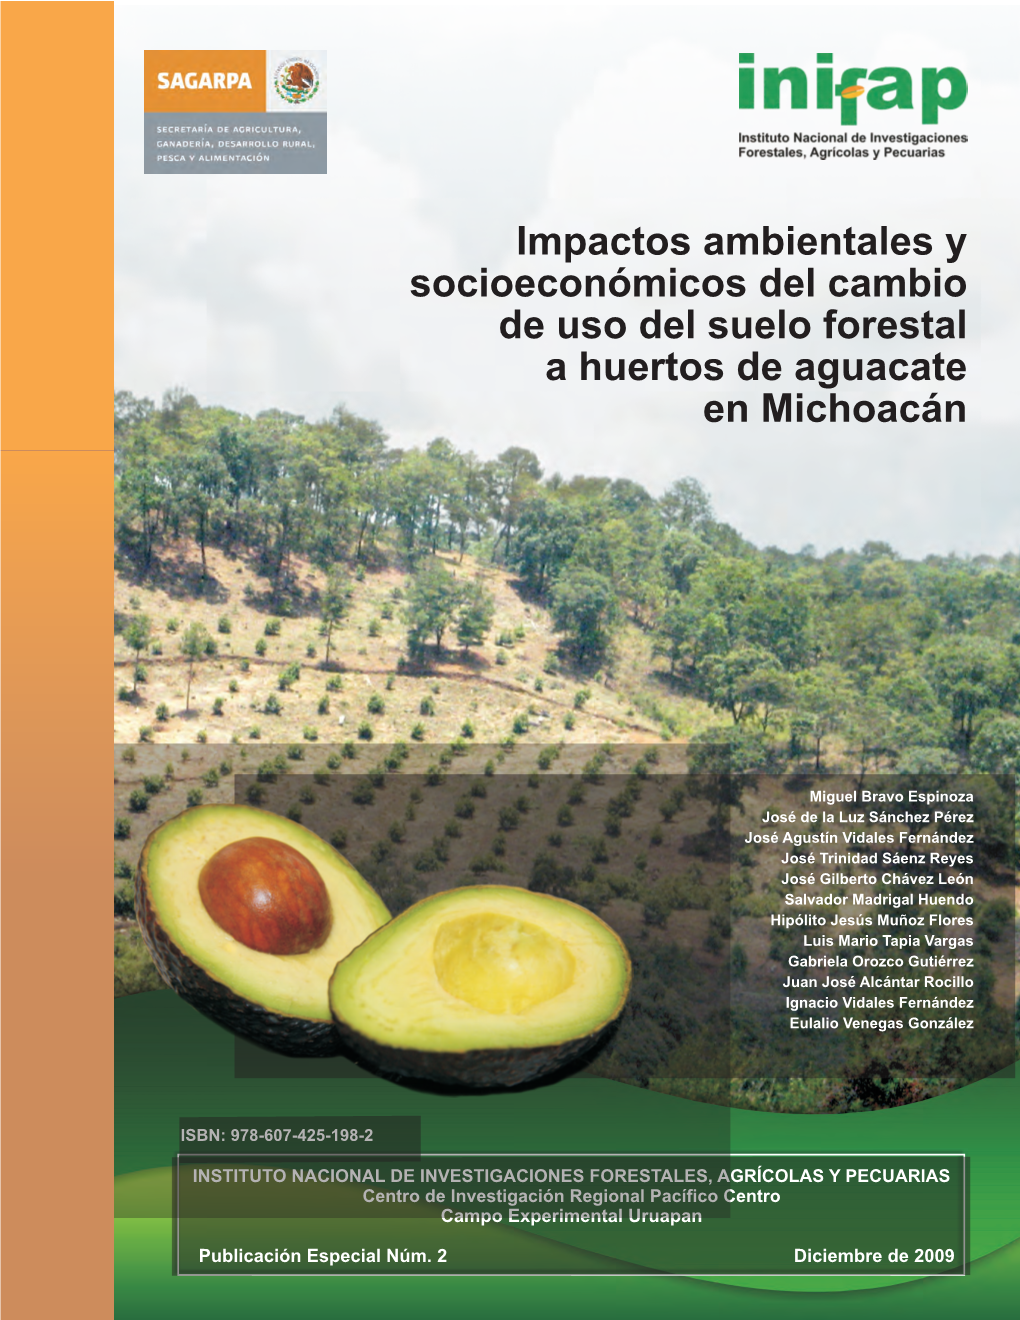 Impactos Ambientales Y Socioeconómicos Del Cambio De Uso Del Suelo Forestal a Huertos De Aguacate En Michoacán